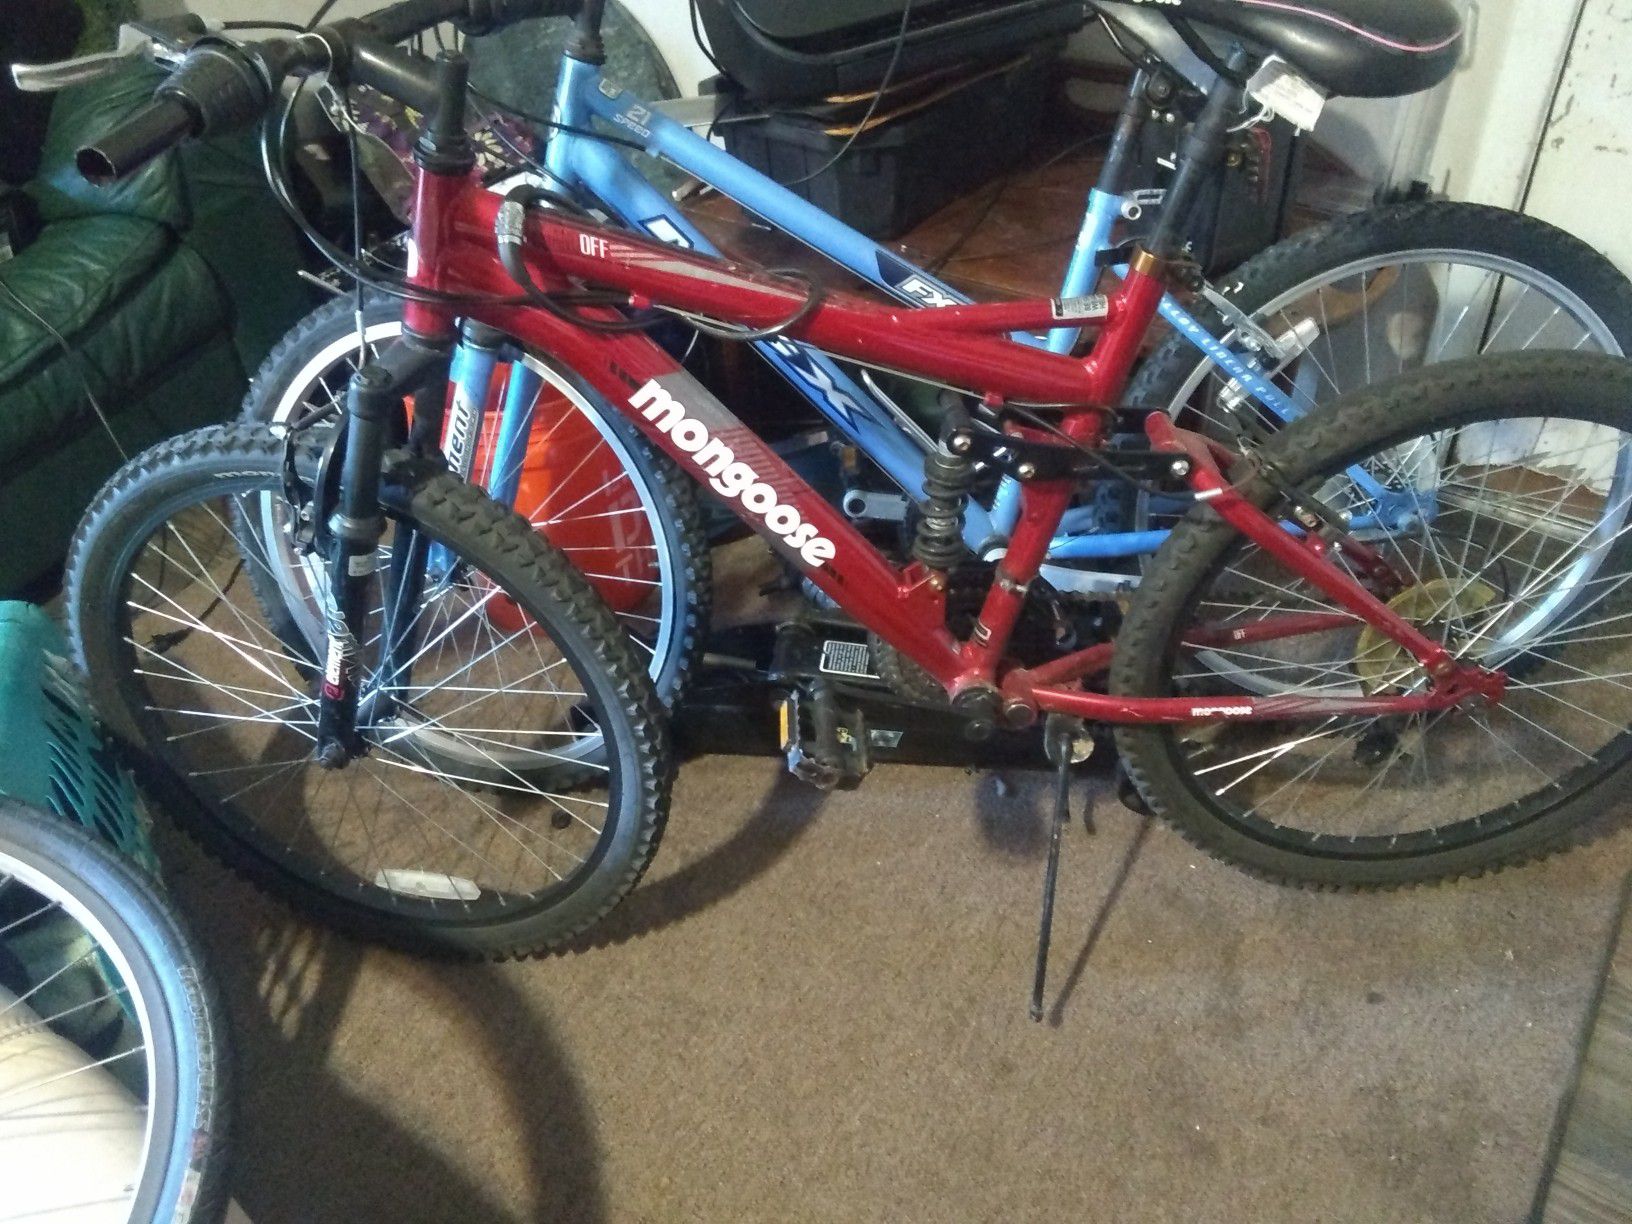 Two mountain bikes